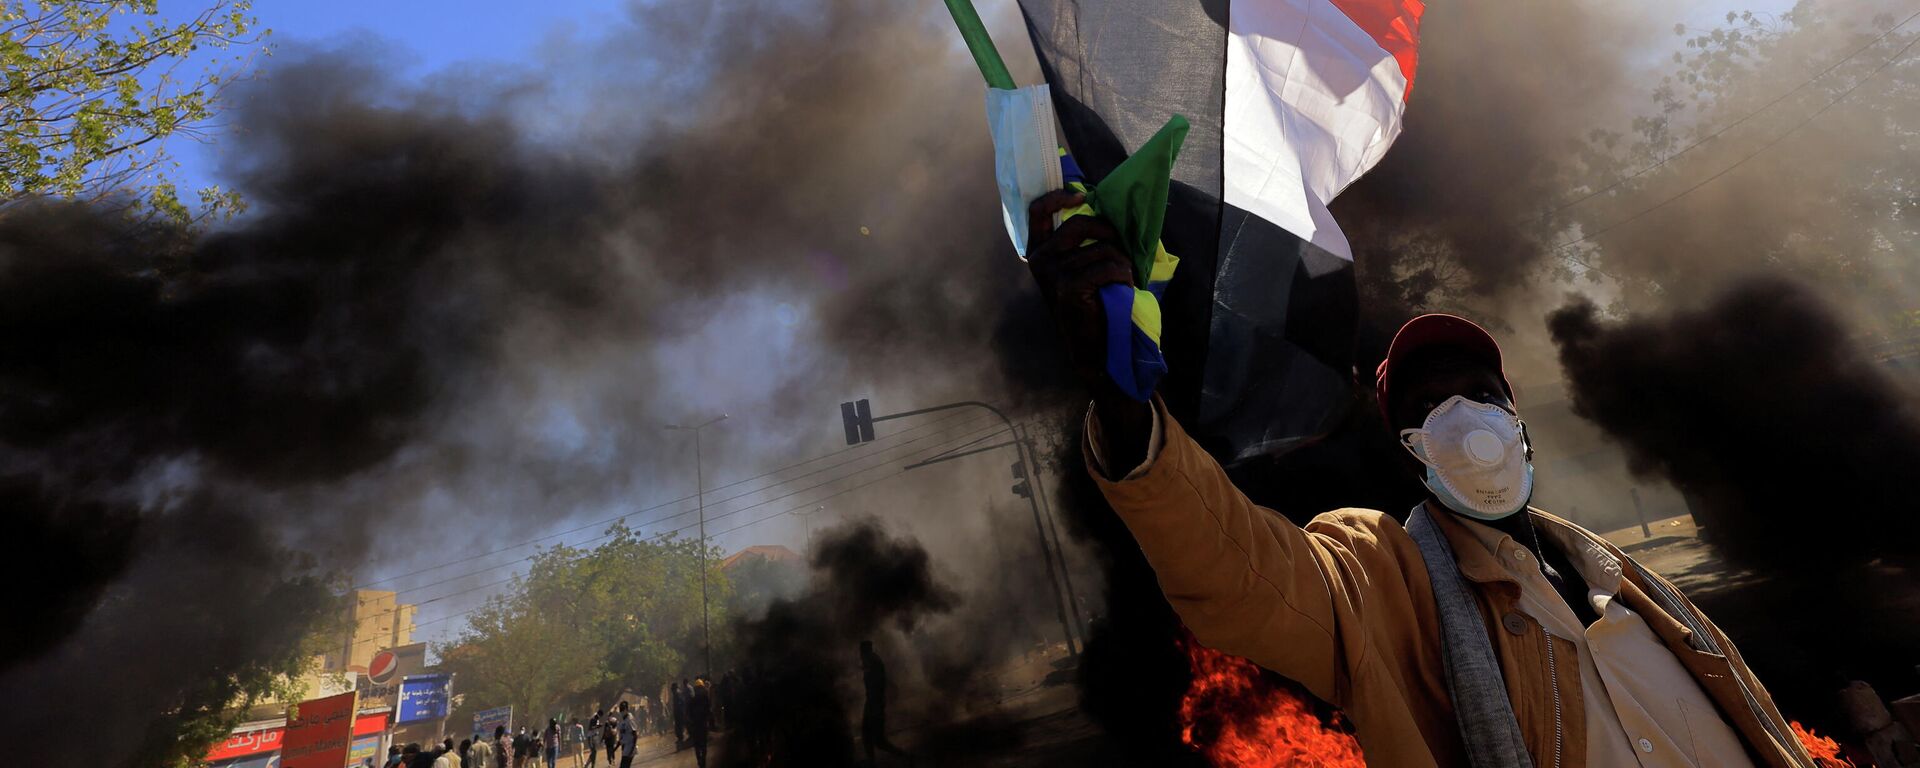 متظاهر في السودان يرفع علم بلاده أثناء احتجاجات الجمعة 31 ديسمبر  - سبوتنيك عربي, 1920, 02.01.2022